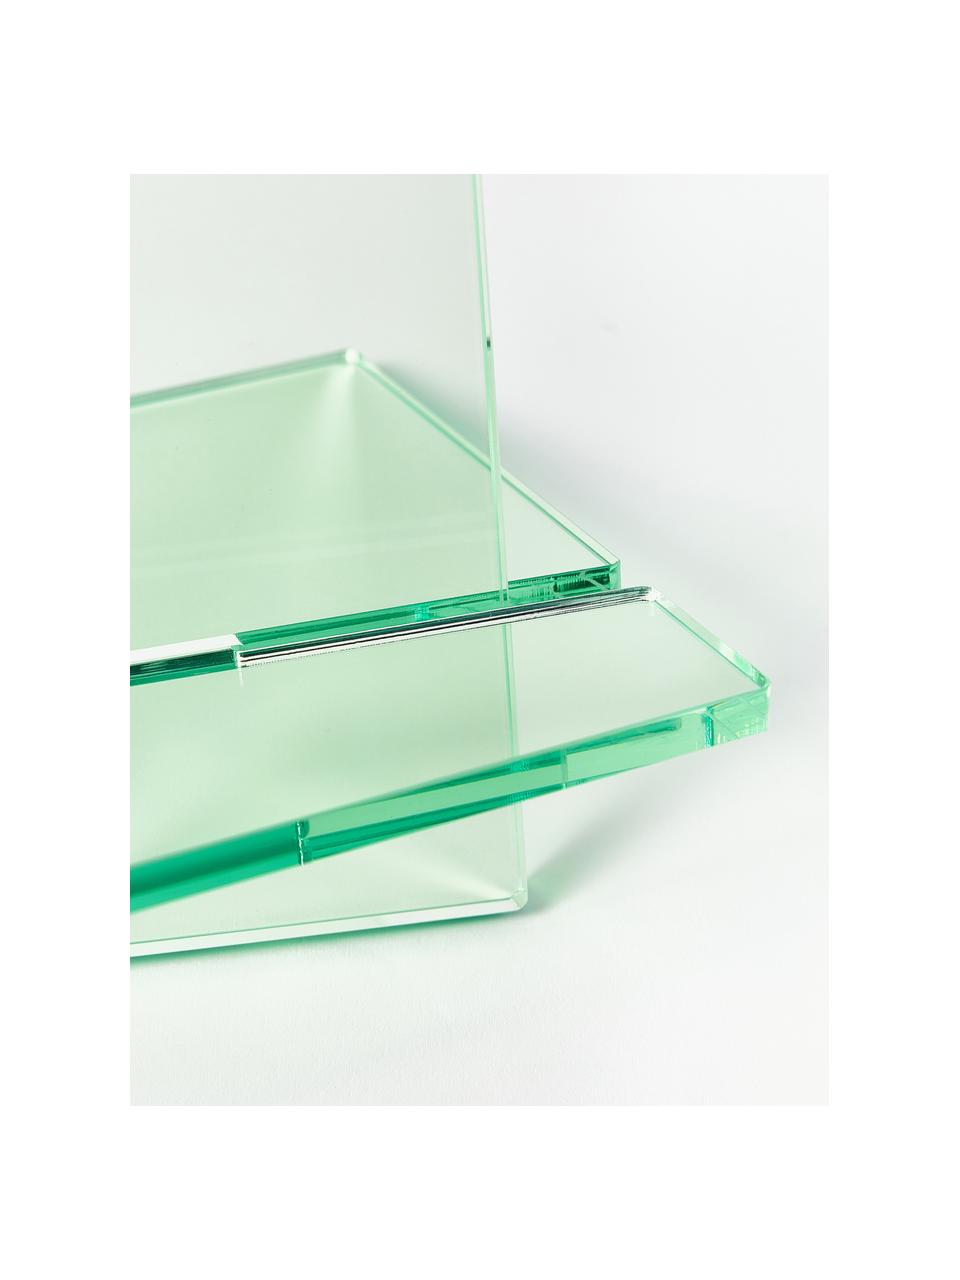 Leggio Crystal, larg. 36 cm x Alt. 34 cm, Vetro acrilico, Verde chiaro trasparente, Larg. 36 x Alt. 34 cm